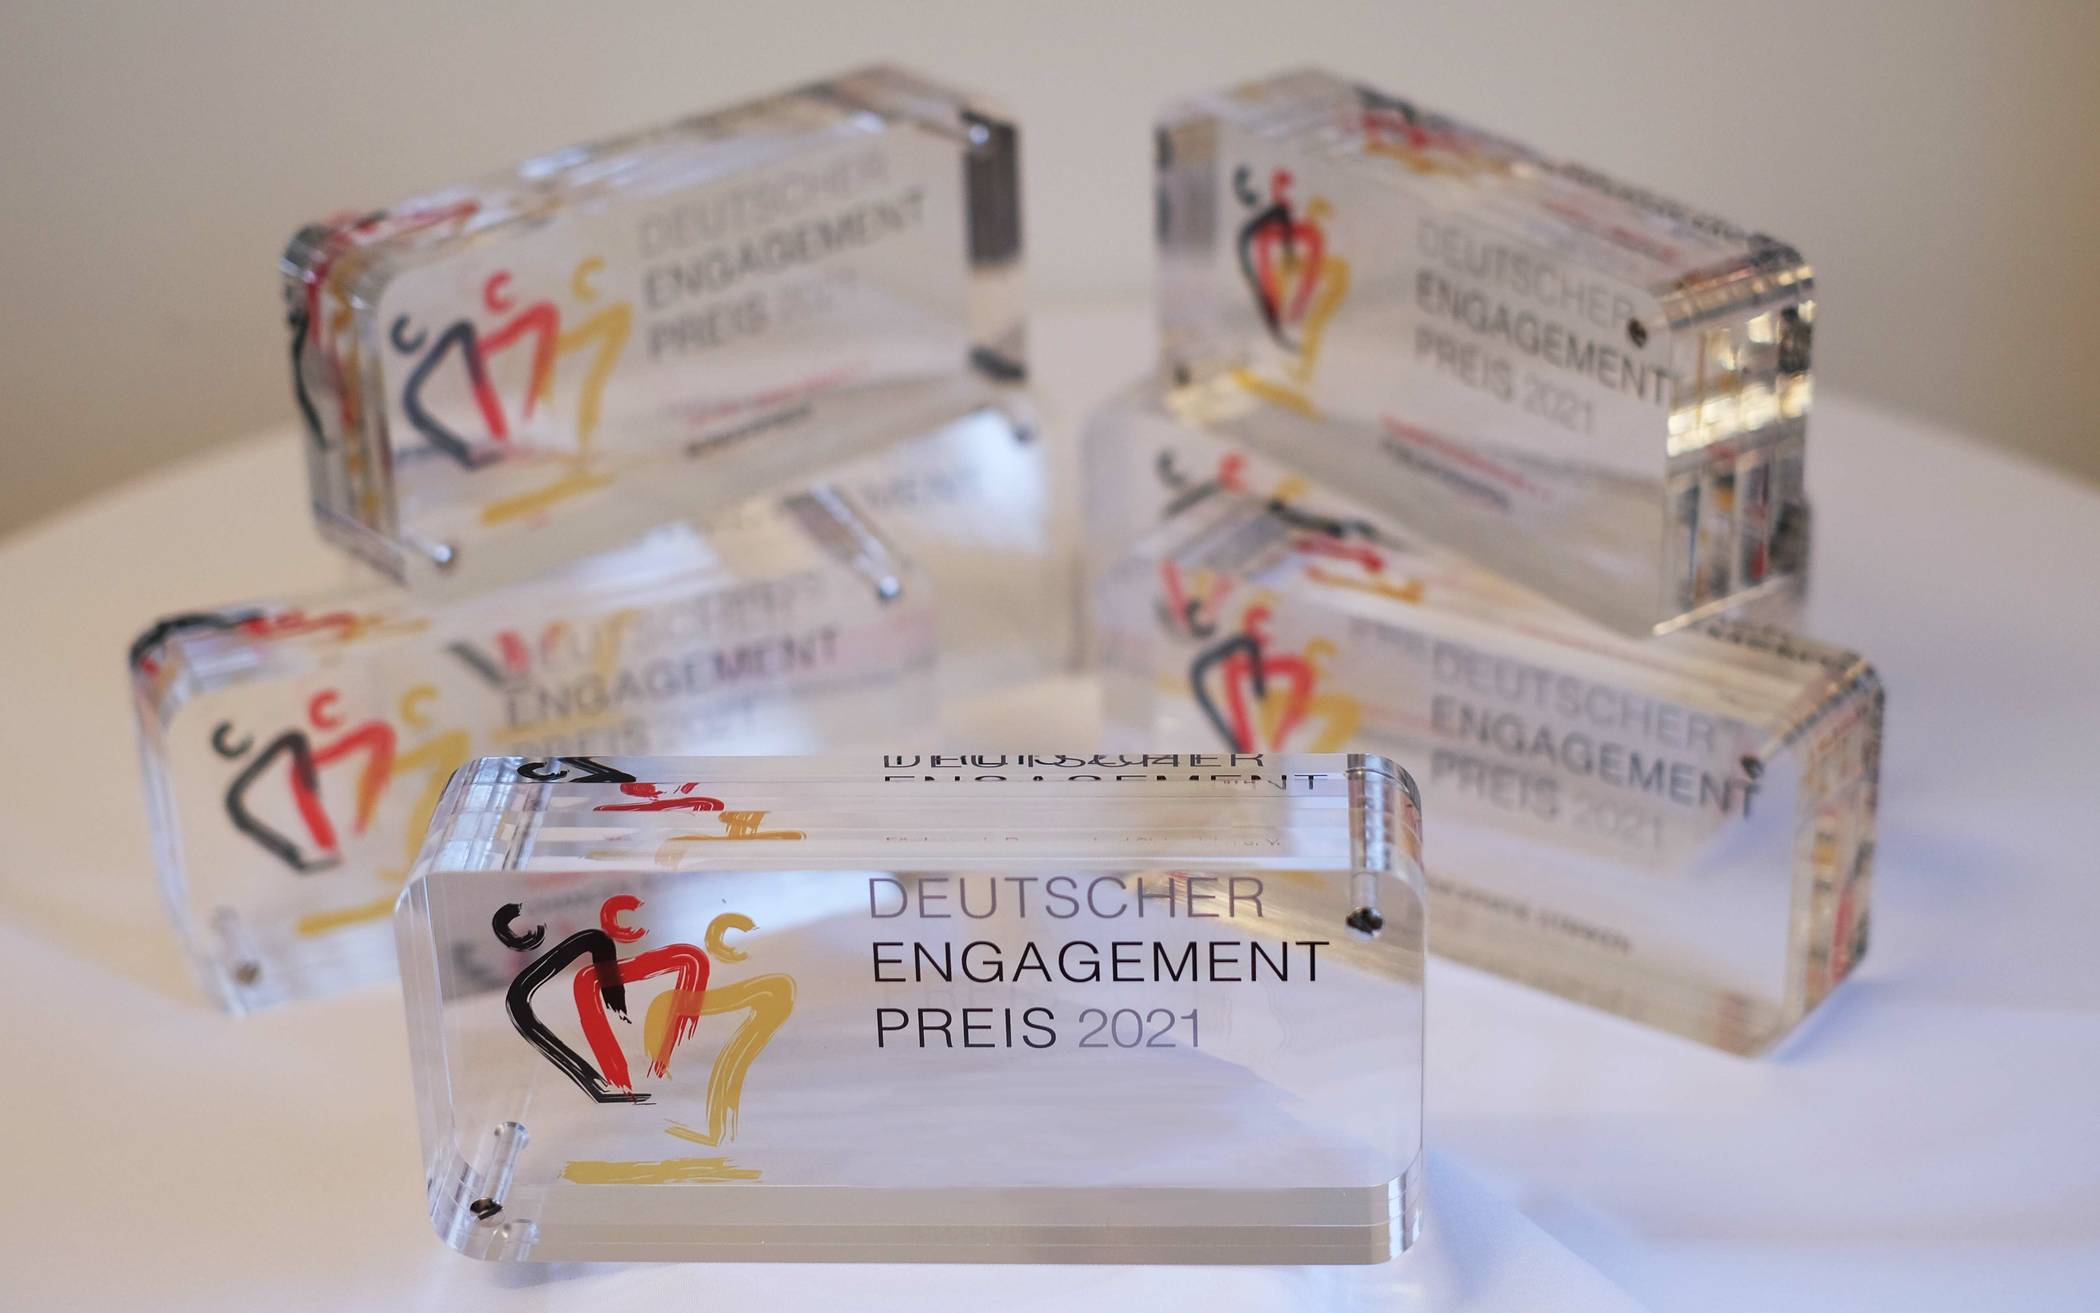 Der Deutsche Engagementpreis begeistert für Engagement, macht es sichtbar und stärkt die Wertschätzung für freiwilliges Engagement.